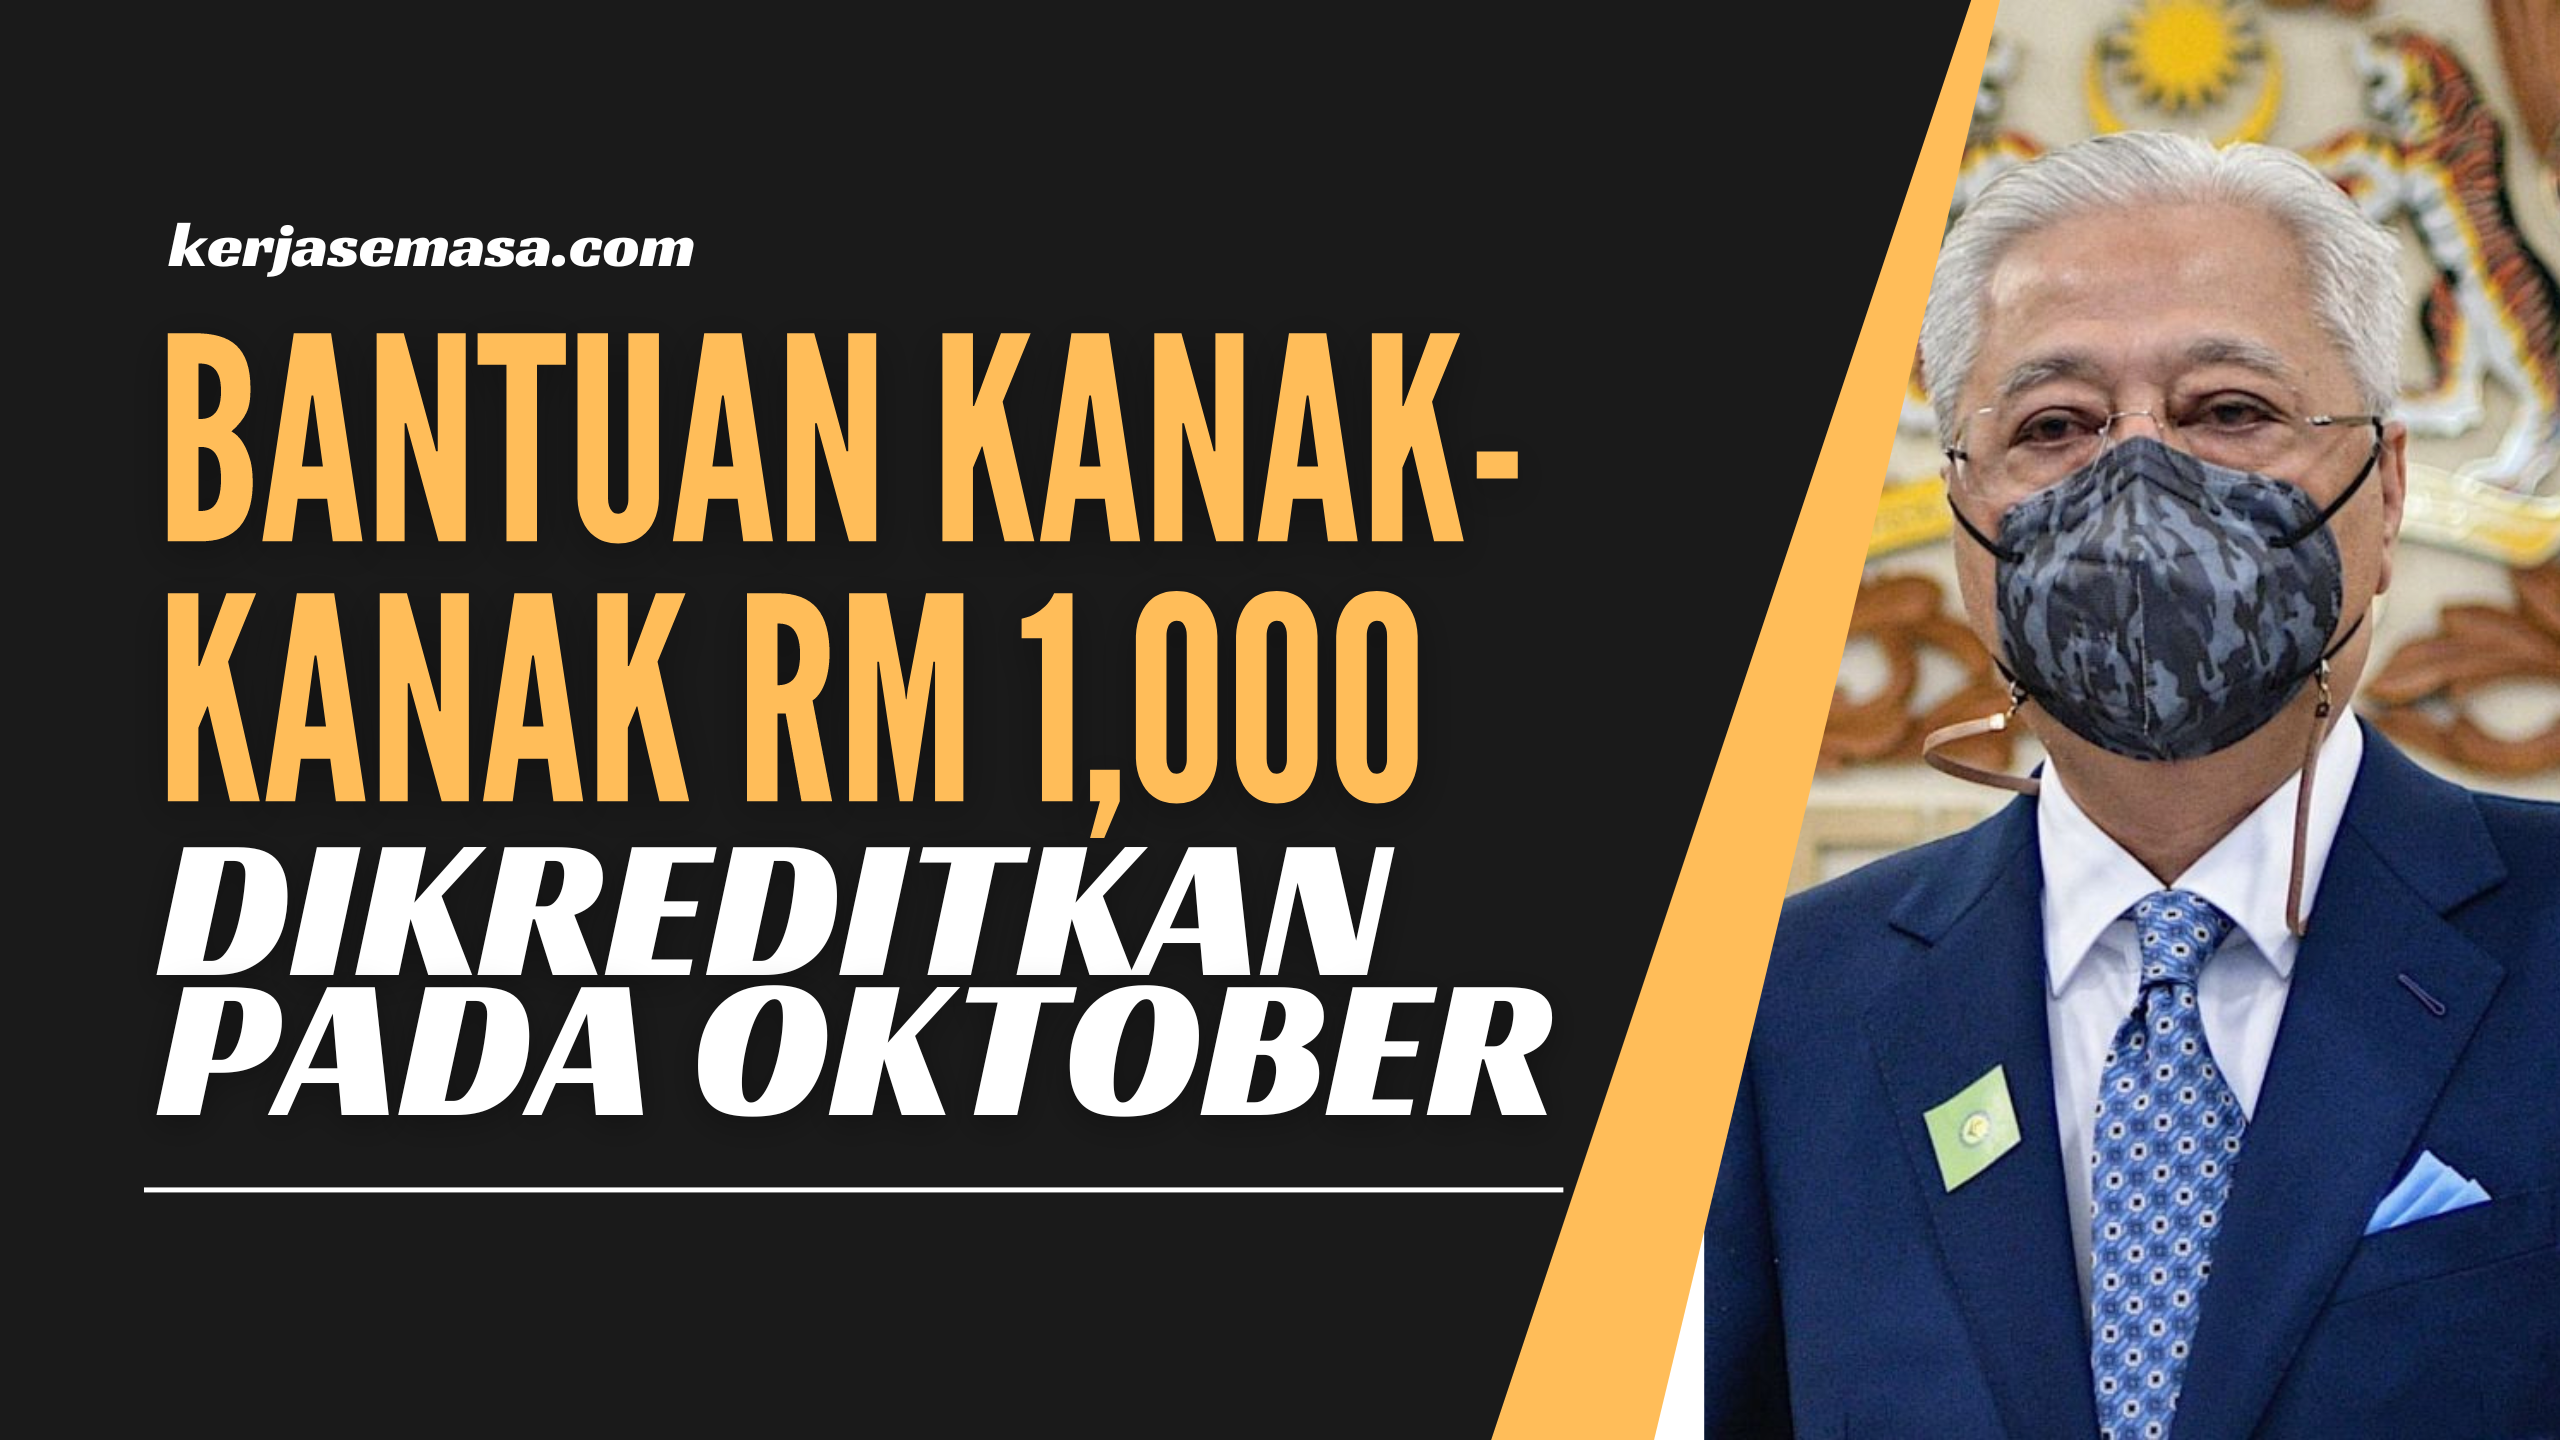 Bantuan Kanak-Kanak RM 1,000 Yang Akan Dikreditkan Pada Oktober